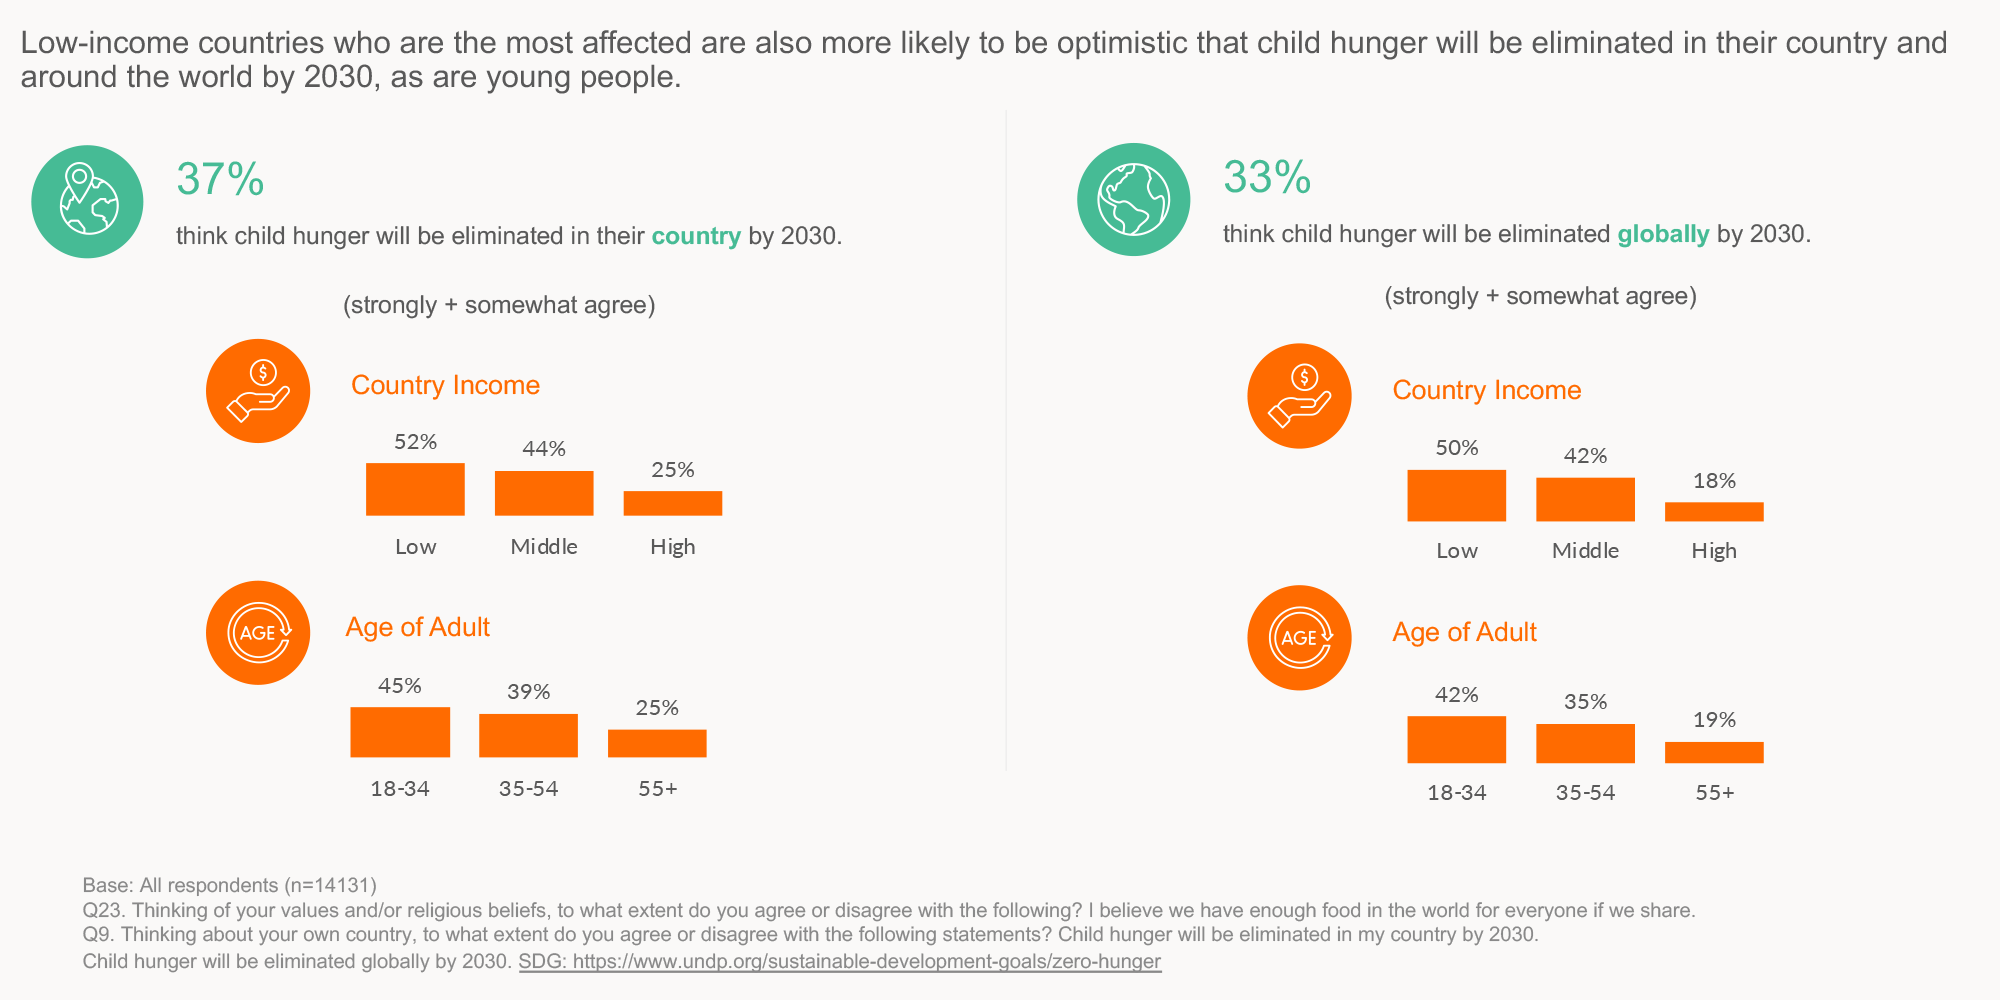 Ipsos | Los países de bajos ingresos que son los más afectados también tienen más probabilidades de ser optimistas en cuanto a que el hambre infantil se eliminará en su país y en todo el mundo para 2030, al igual que los jóvenes.